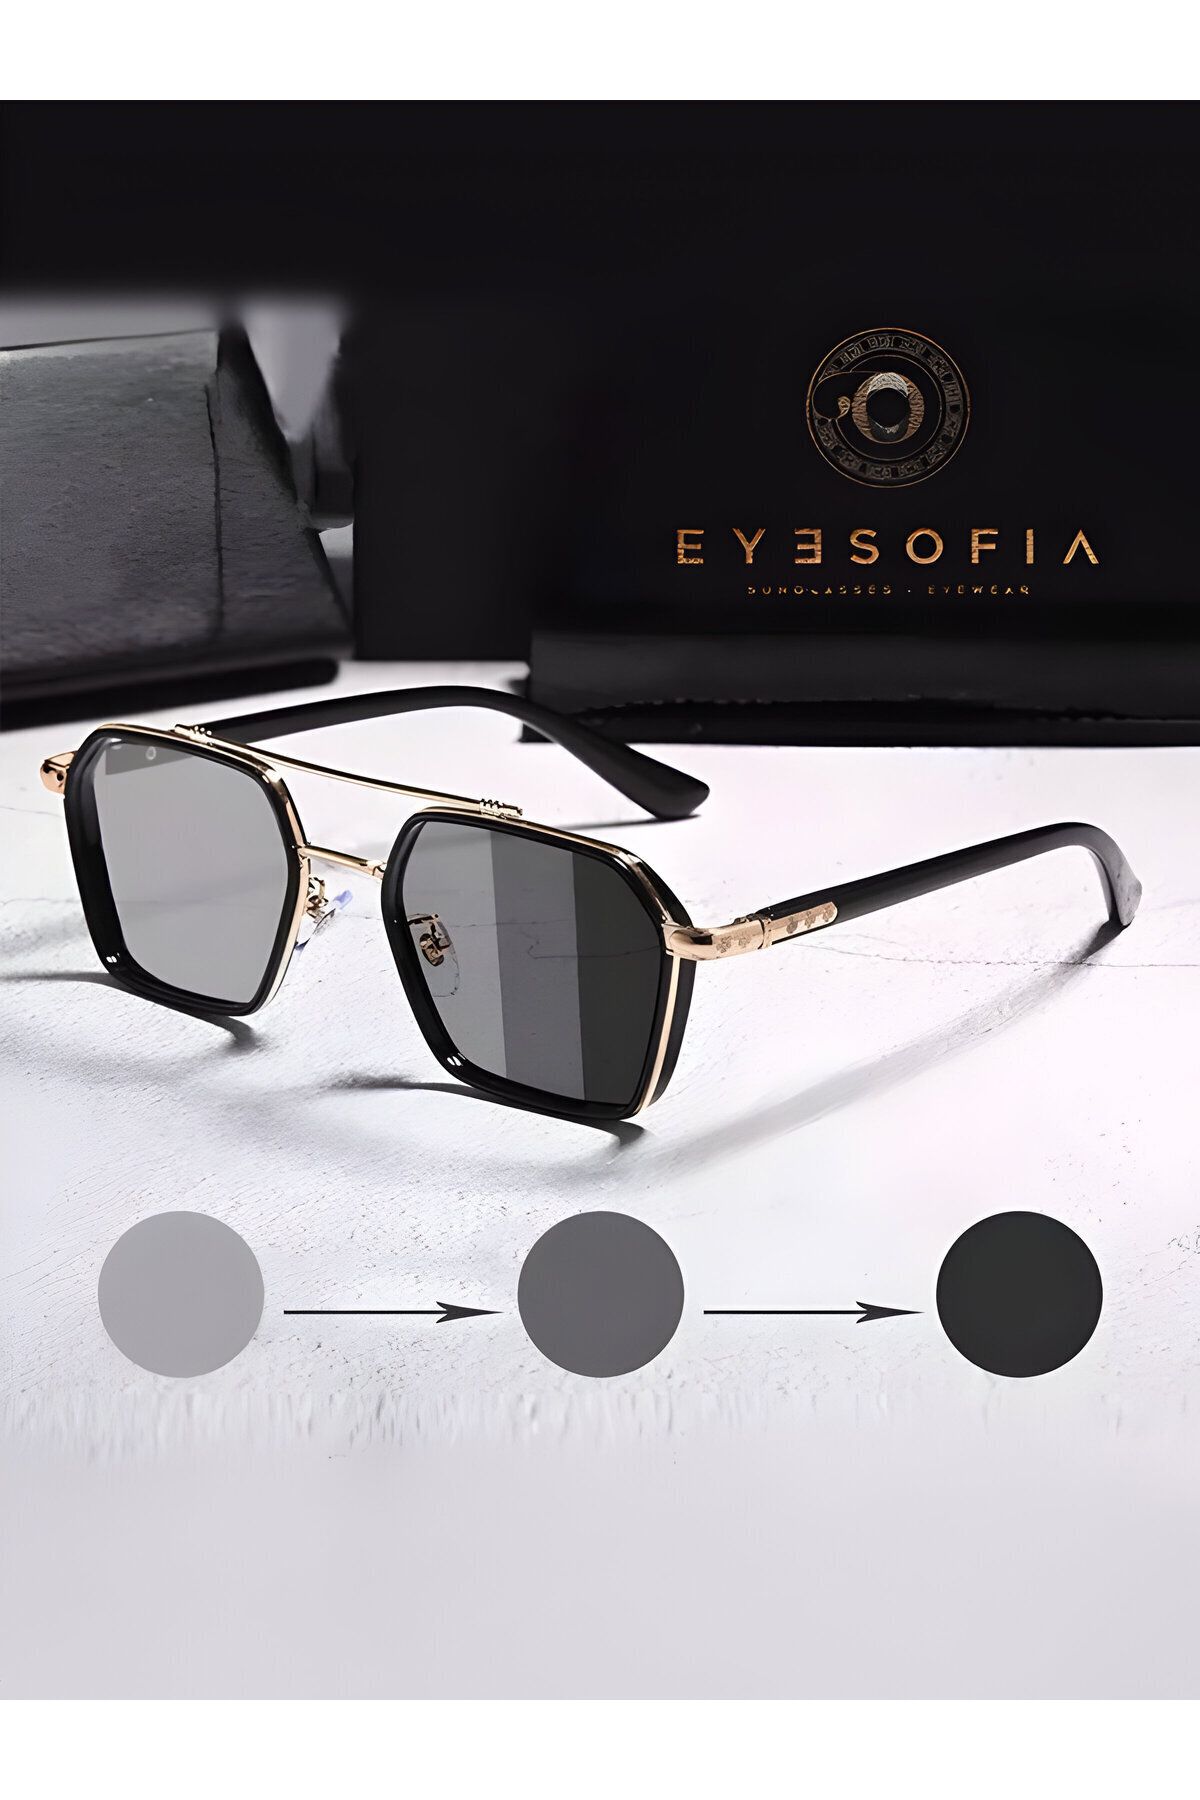 Eyesofia Güneş Gözlüğü Kadın & Erkek Uv400 Cam Ce Belgeli Gold Siyah